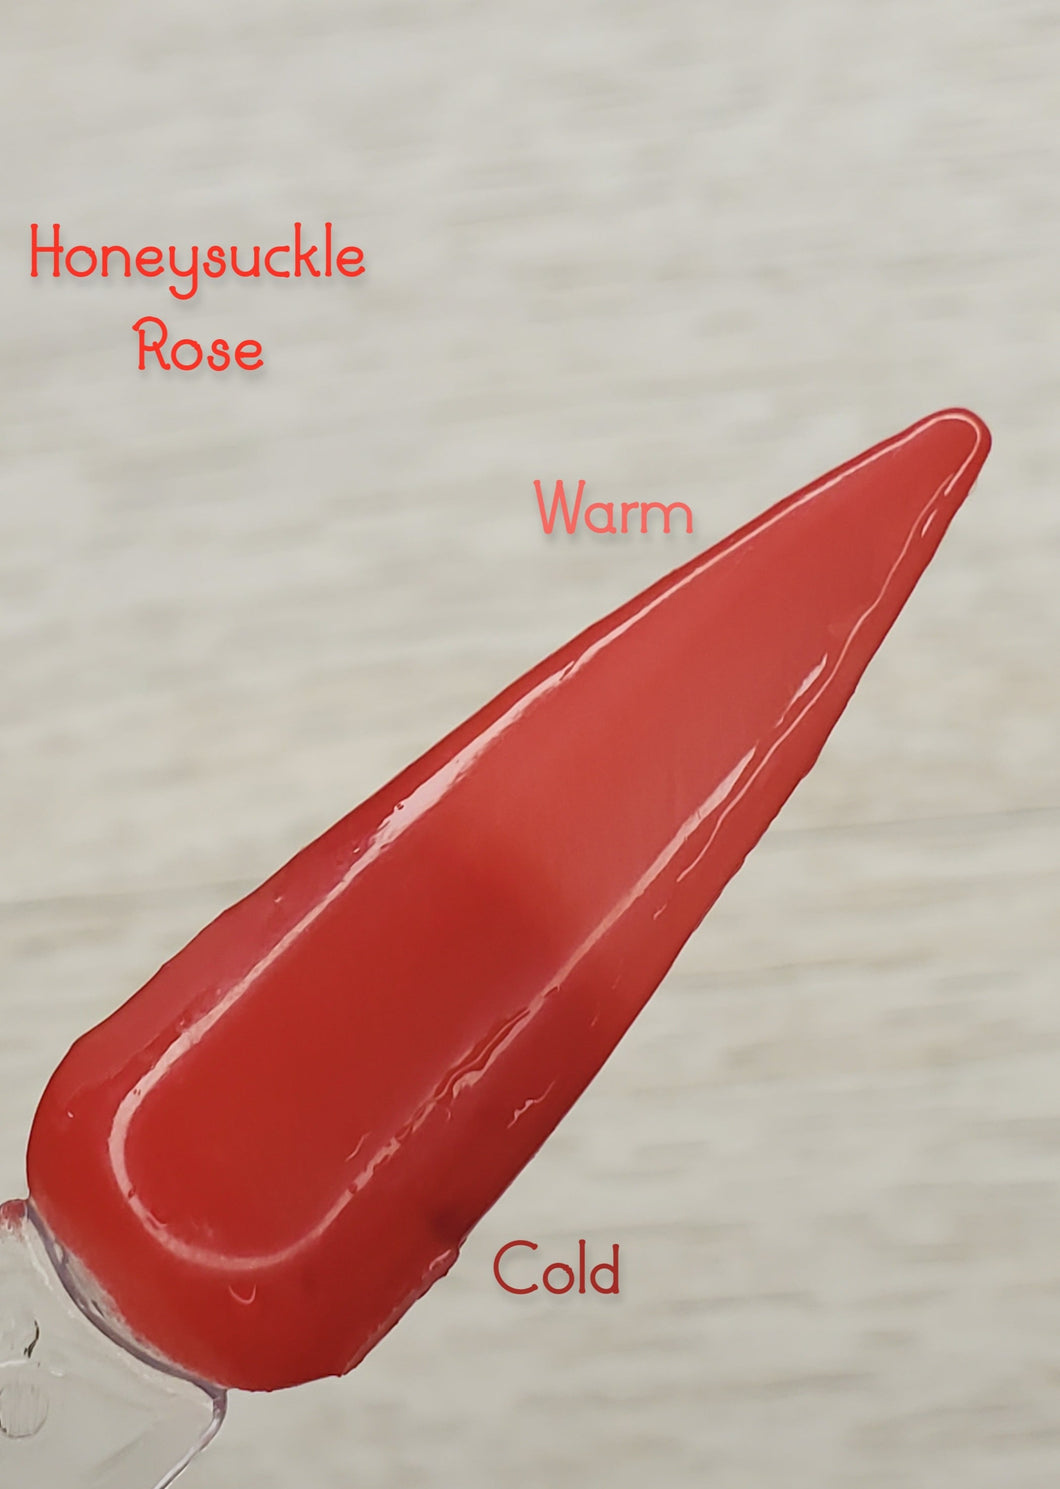 Honeysuckle Rose - Red and Coral Thermal Nail Dip Powder